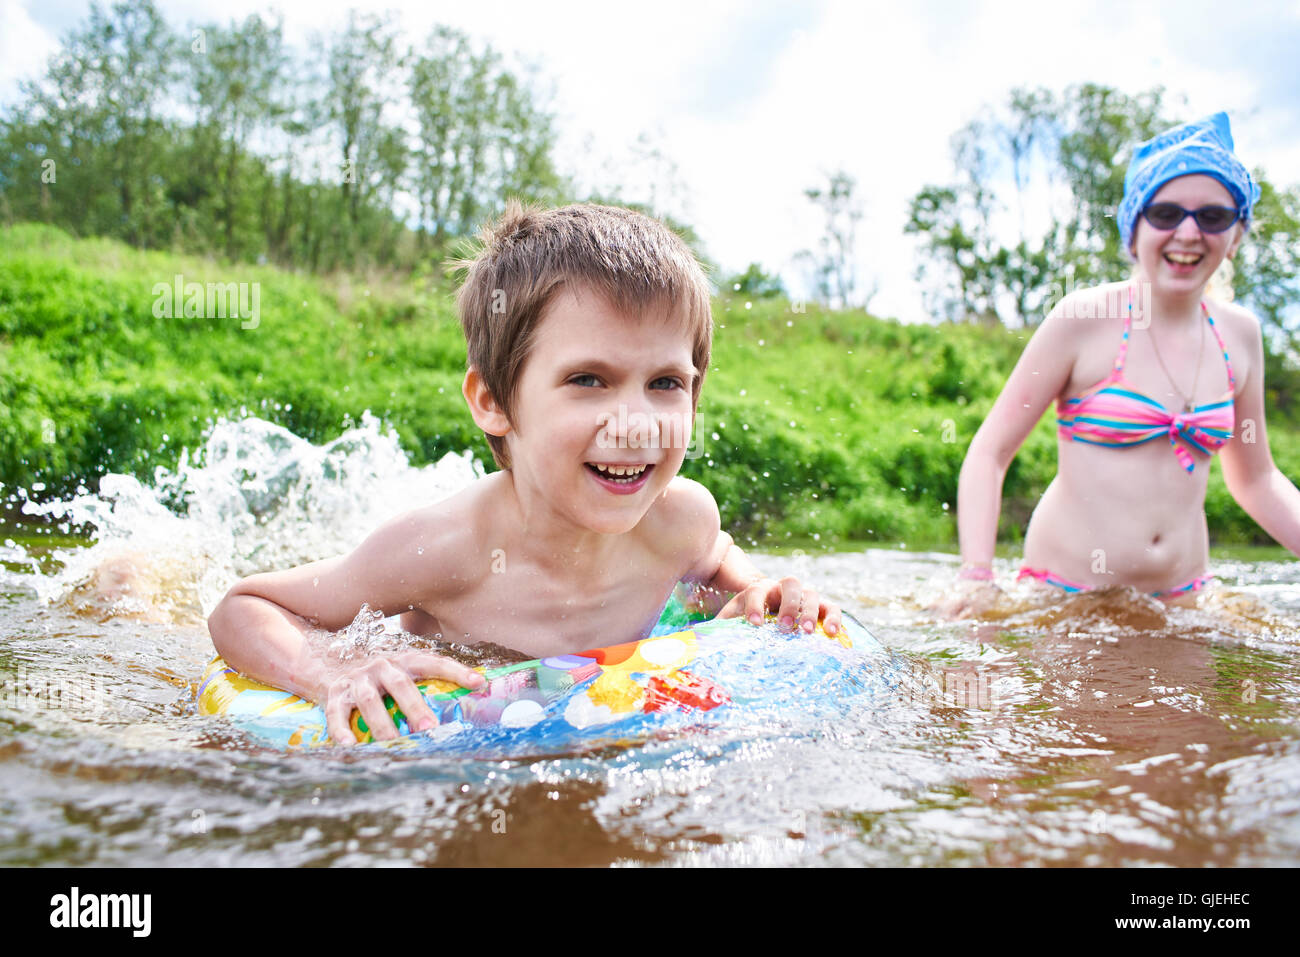 14 лет купаемся. Дети купаются в реке. Дети купаются в озере. Совместное купание. Купание детей девочек.